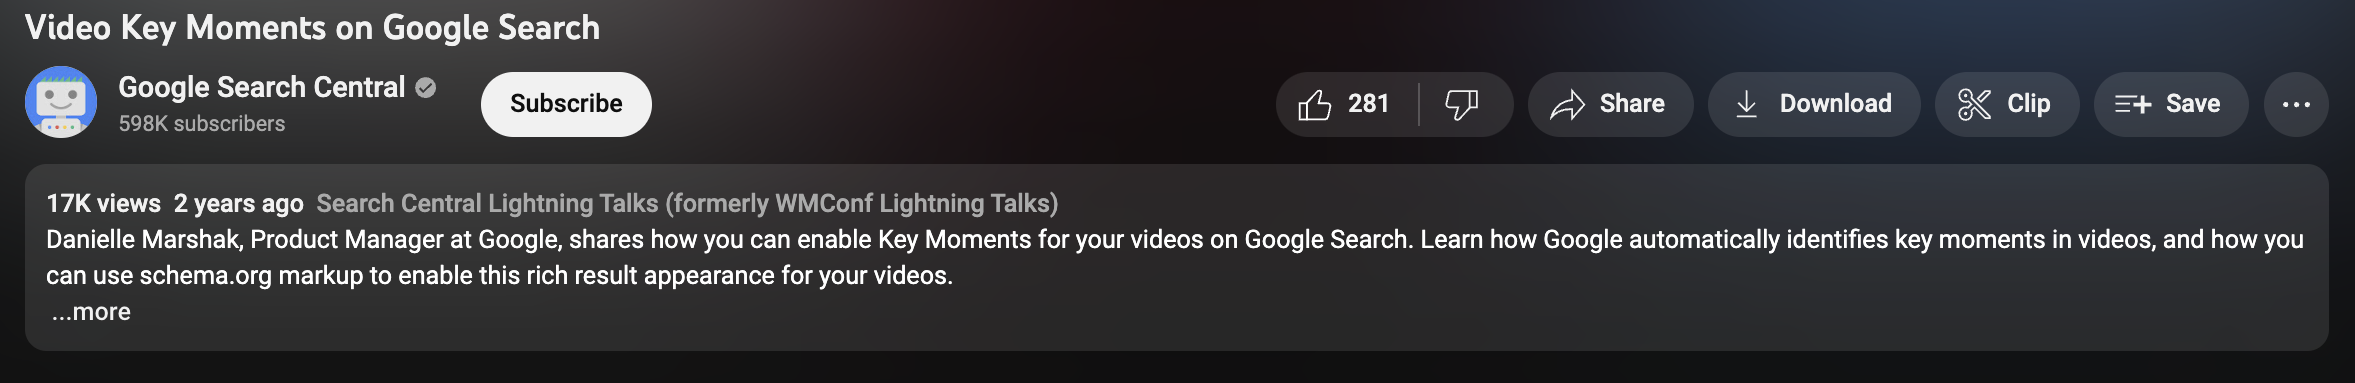 La última actualización de Google Bard mejora la comprensión de los vídeos de YouTube